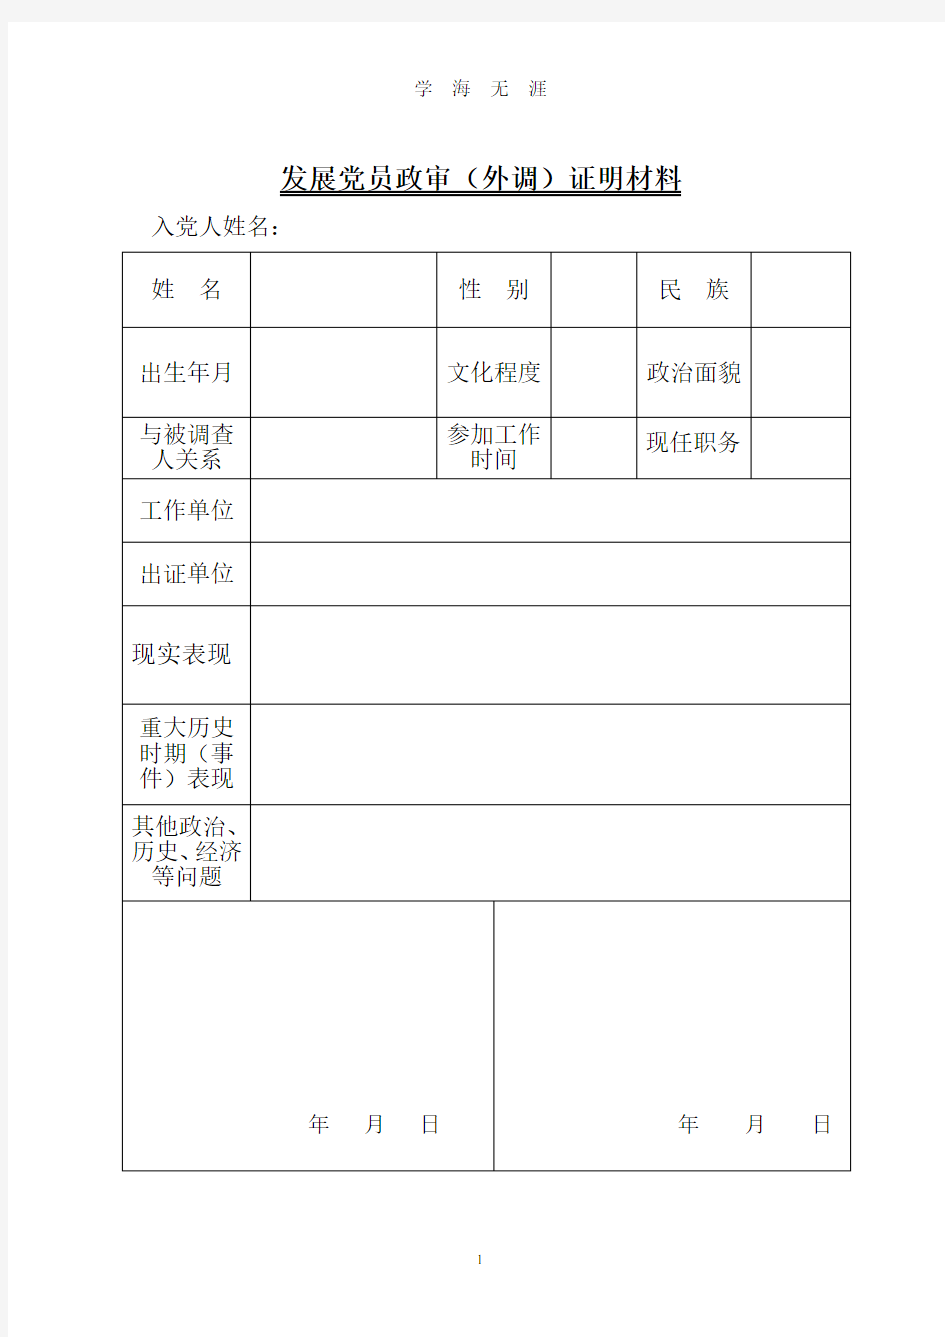 发展党员政审证明材料表格(2020年8月整理).pdf